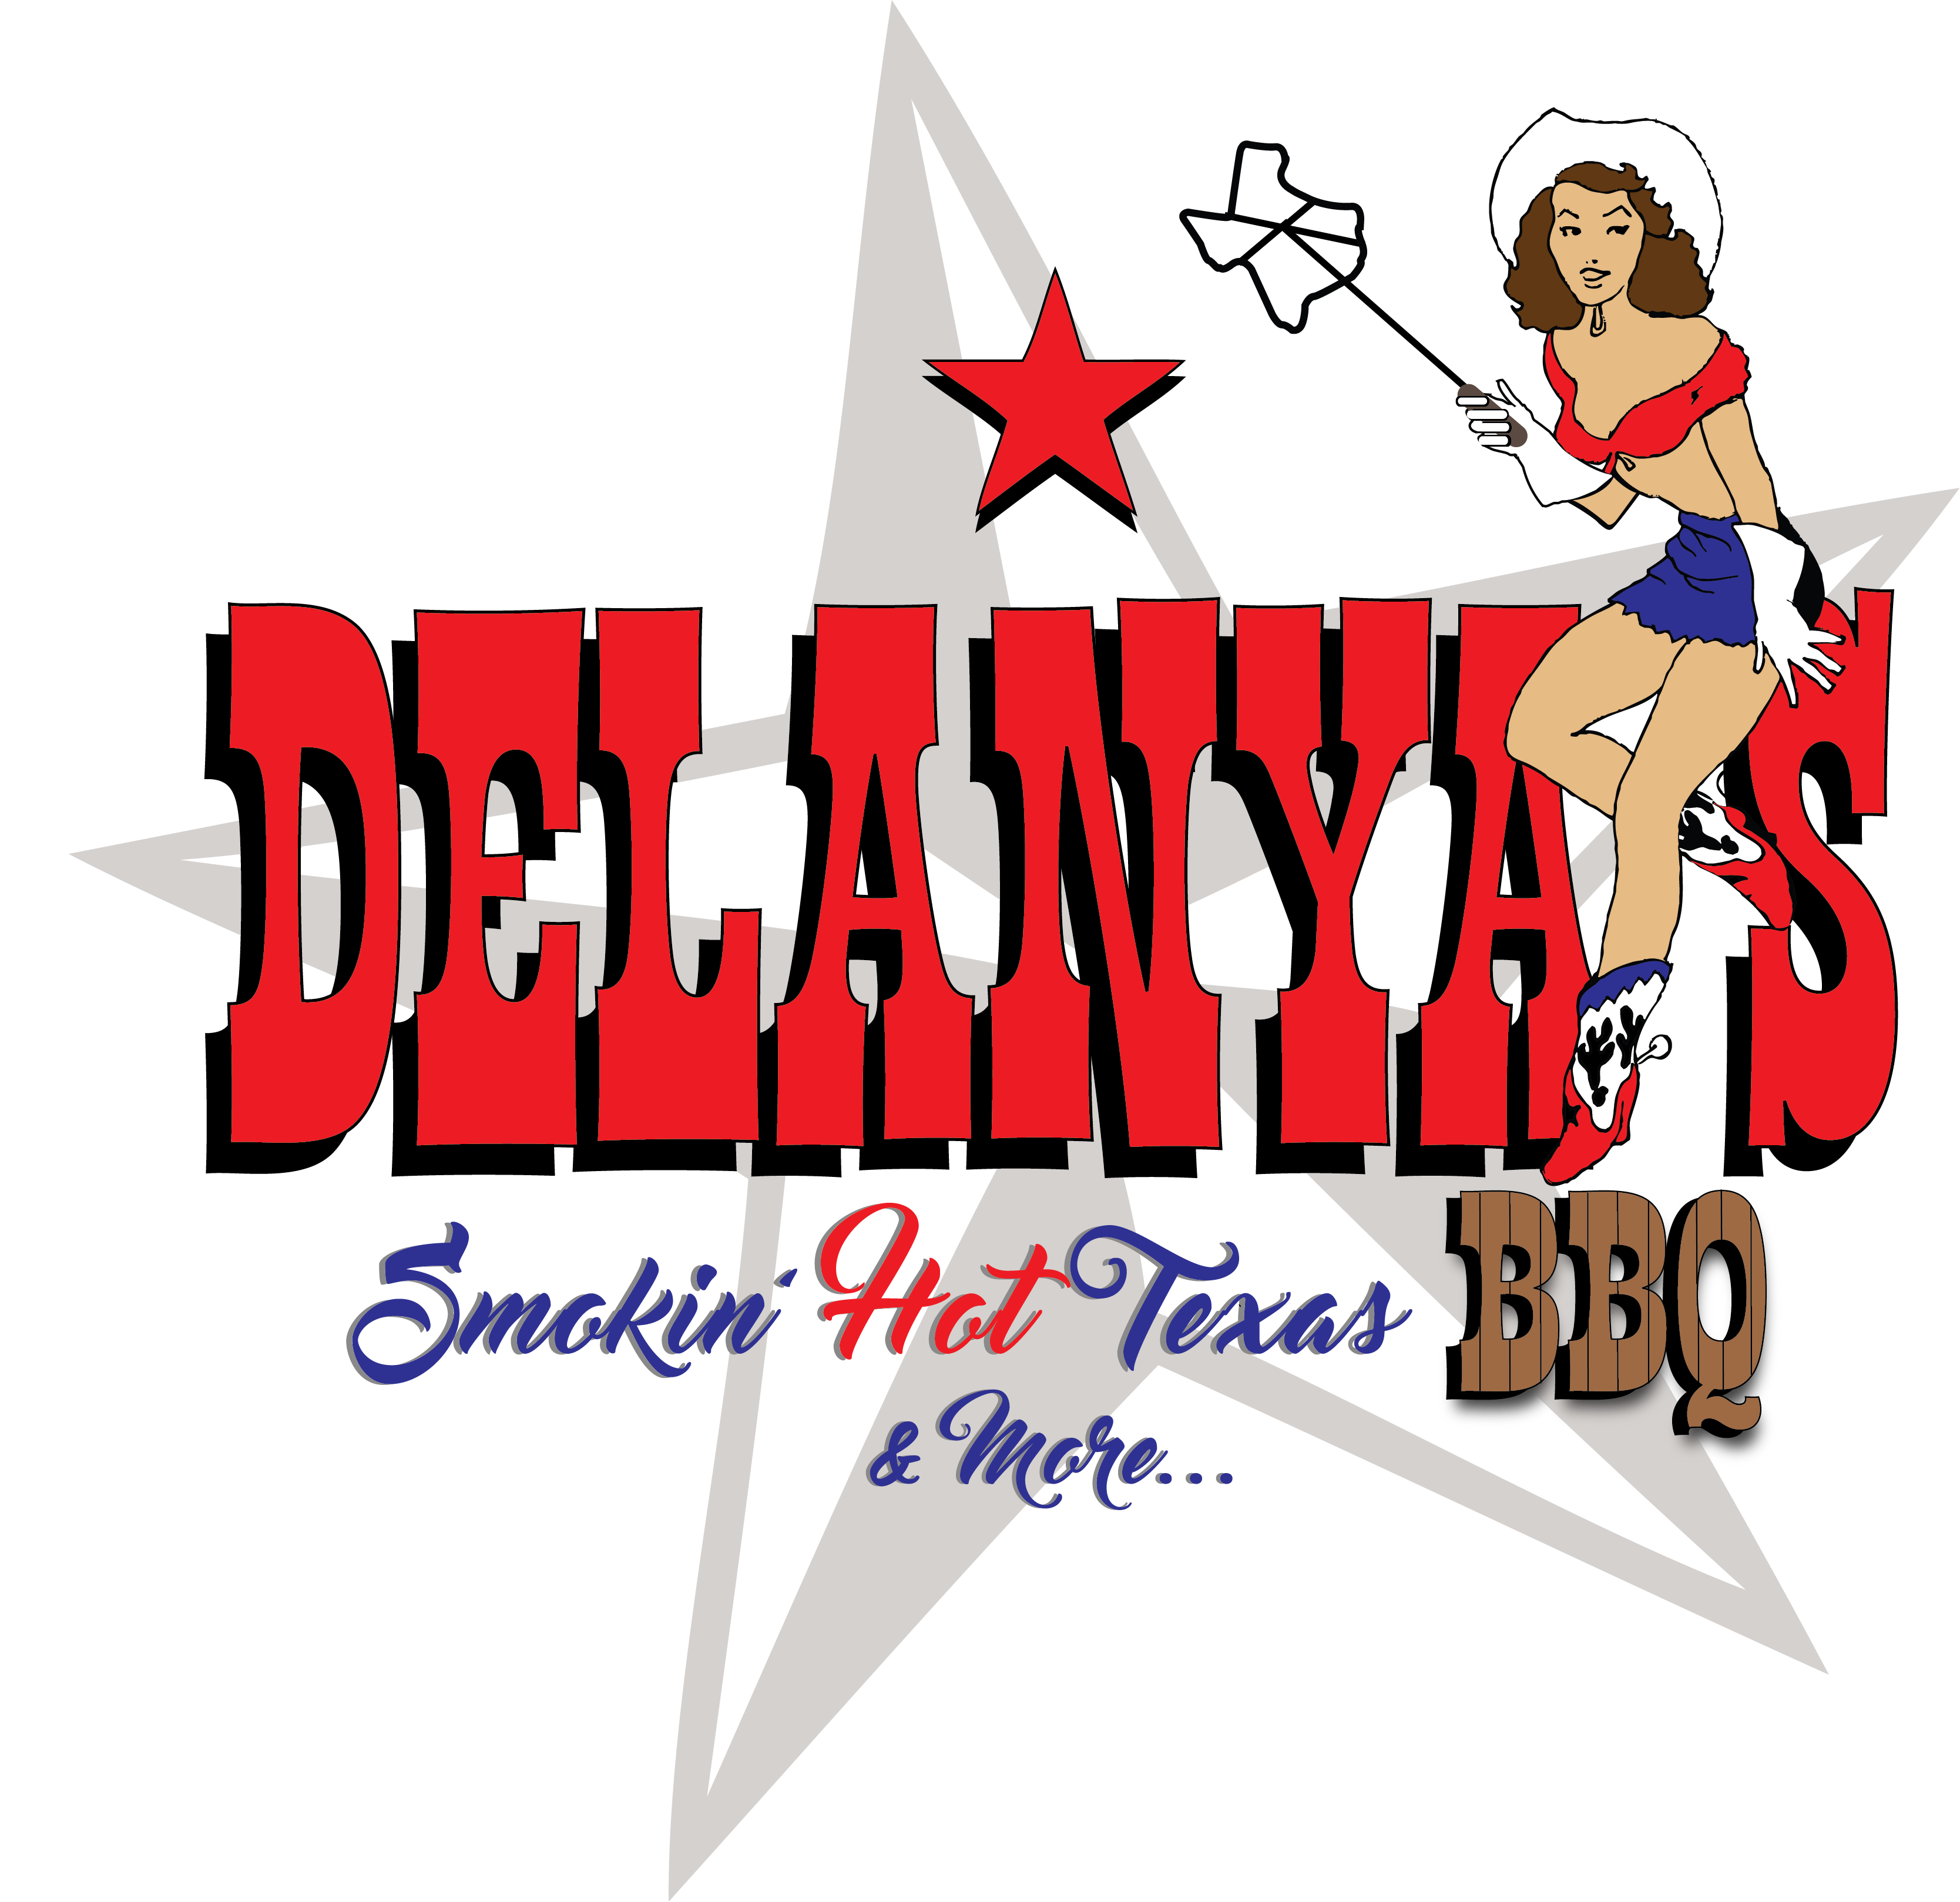 Delanya's Smoking Hot Texas Barbecue and more